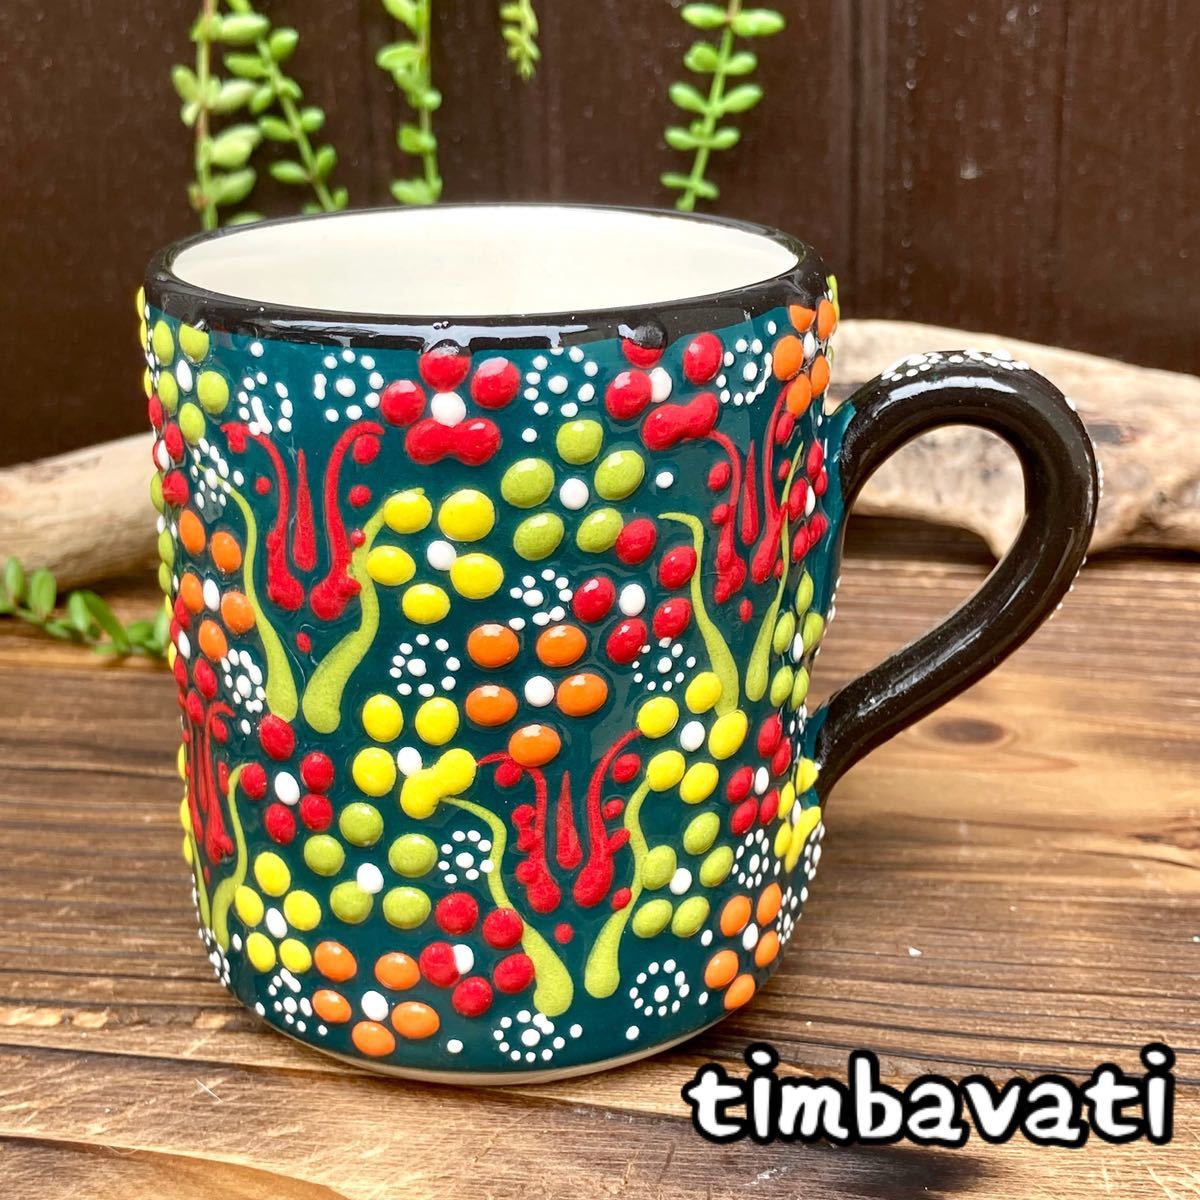 ☆Nuevo☆ Taza de cerámica turca *verde oscuro* Cerámica Kutahya hecha a mano [Envío gratuito bajo ciertas condiciones] 153, utensilios de té, Taza, Cerámico